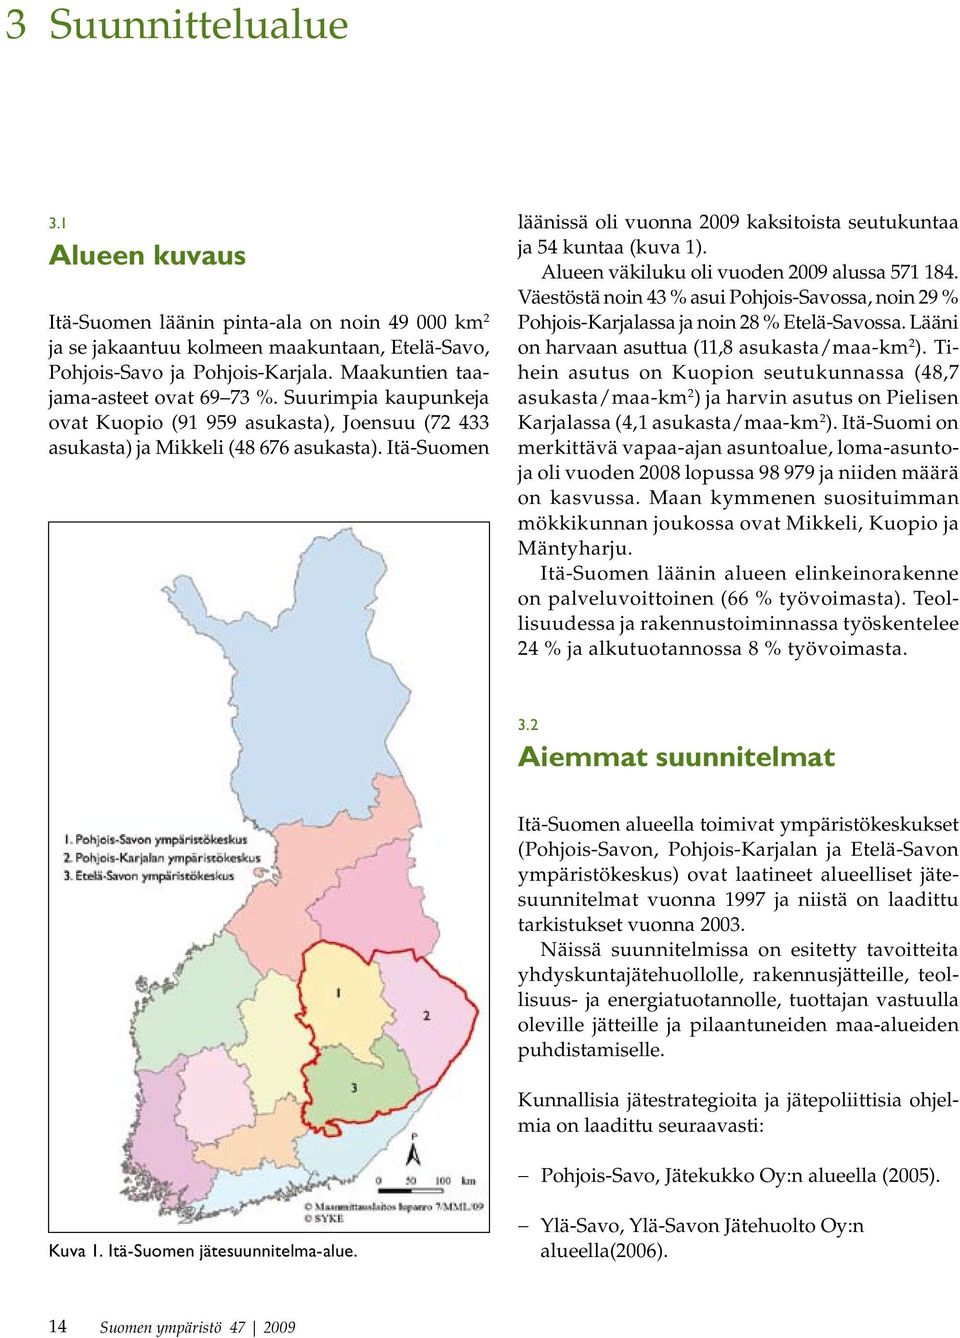 Itä-Suomen läänissä oli vuonna 2009 kaksitoista seutukuntaa ja 54 kuntaa (kuva 1). Alueen väkiluku oli vuoden 2009 alussa 571 184.